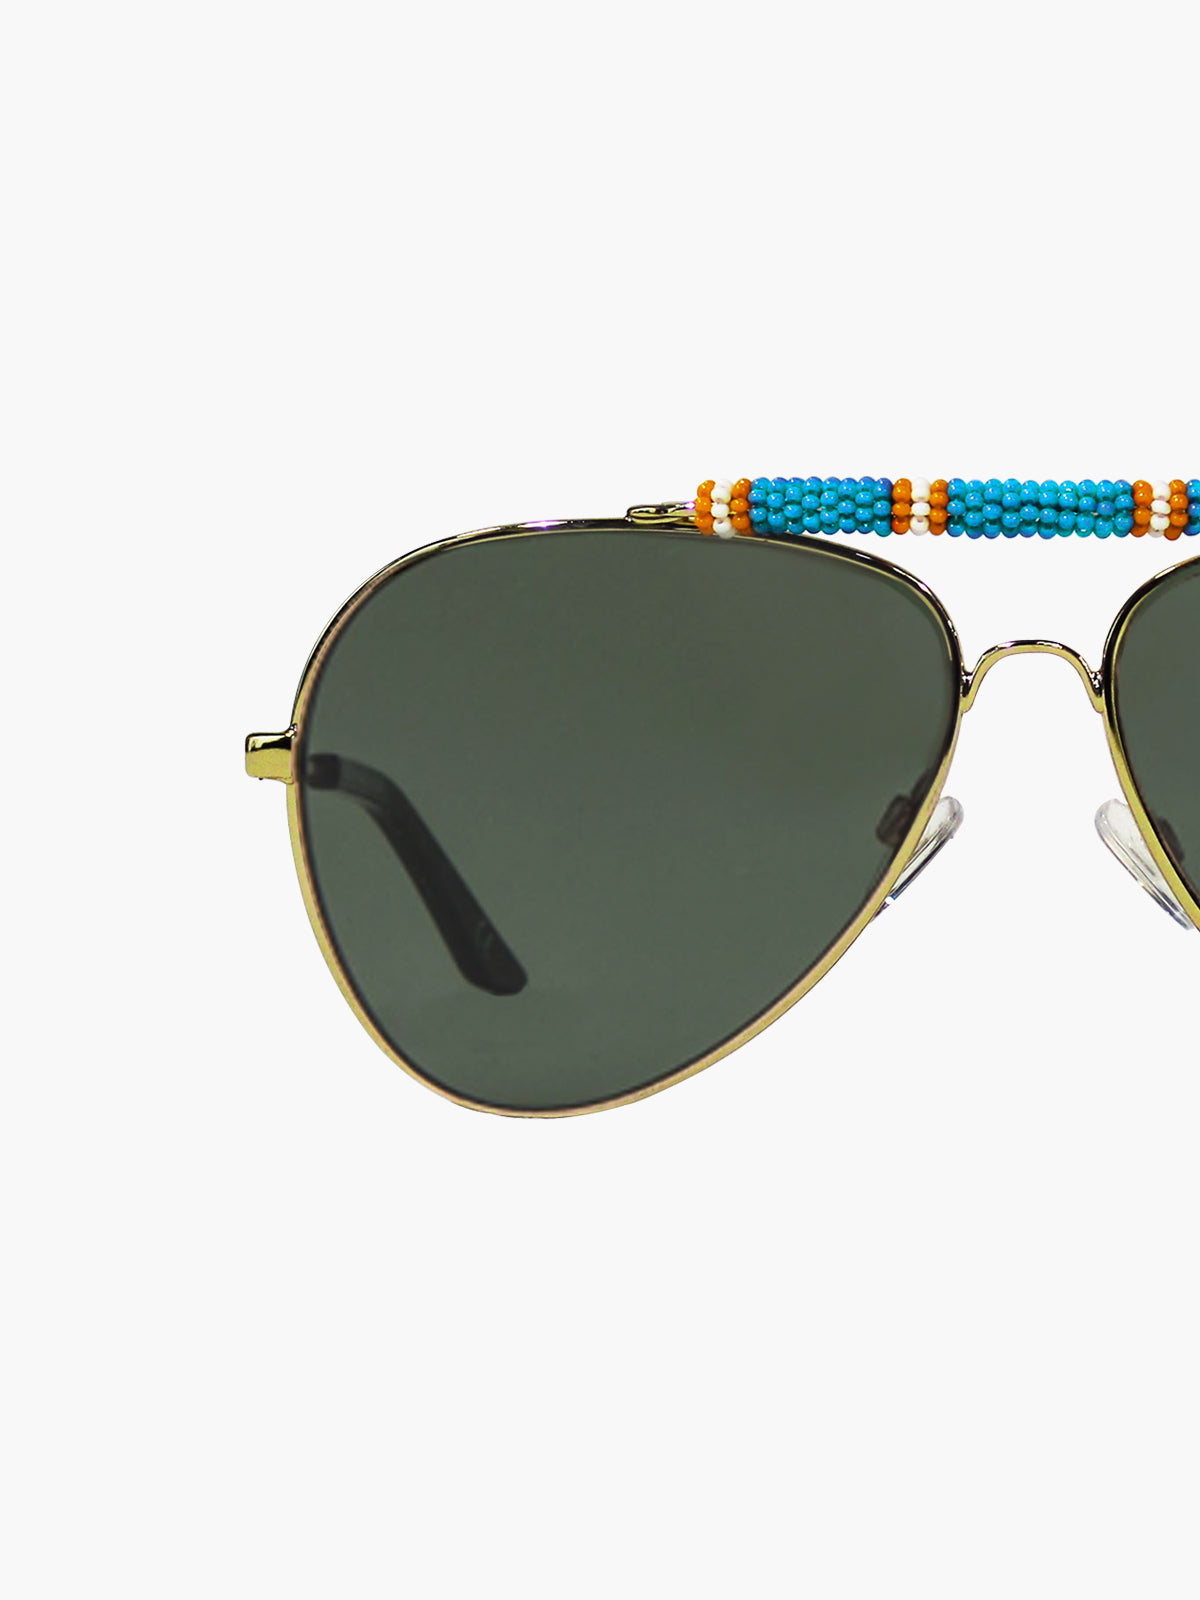 Exclusive Sunglasses | Turquoise/Orange Exclusive Sunglasses | Turquoise/Orange - Fashionkind